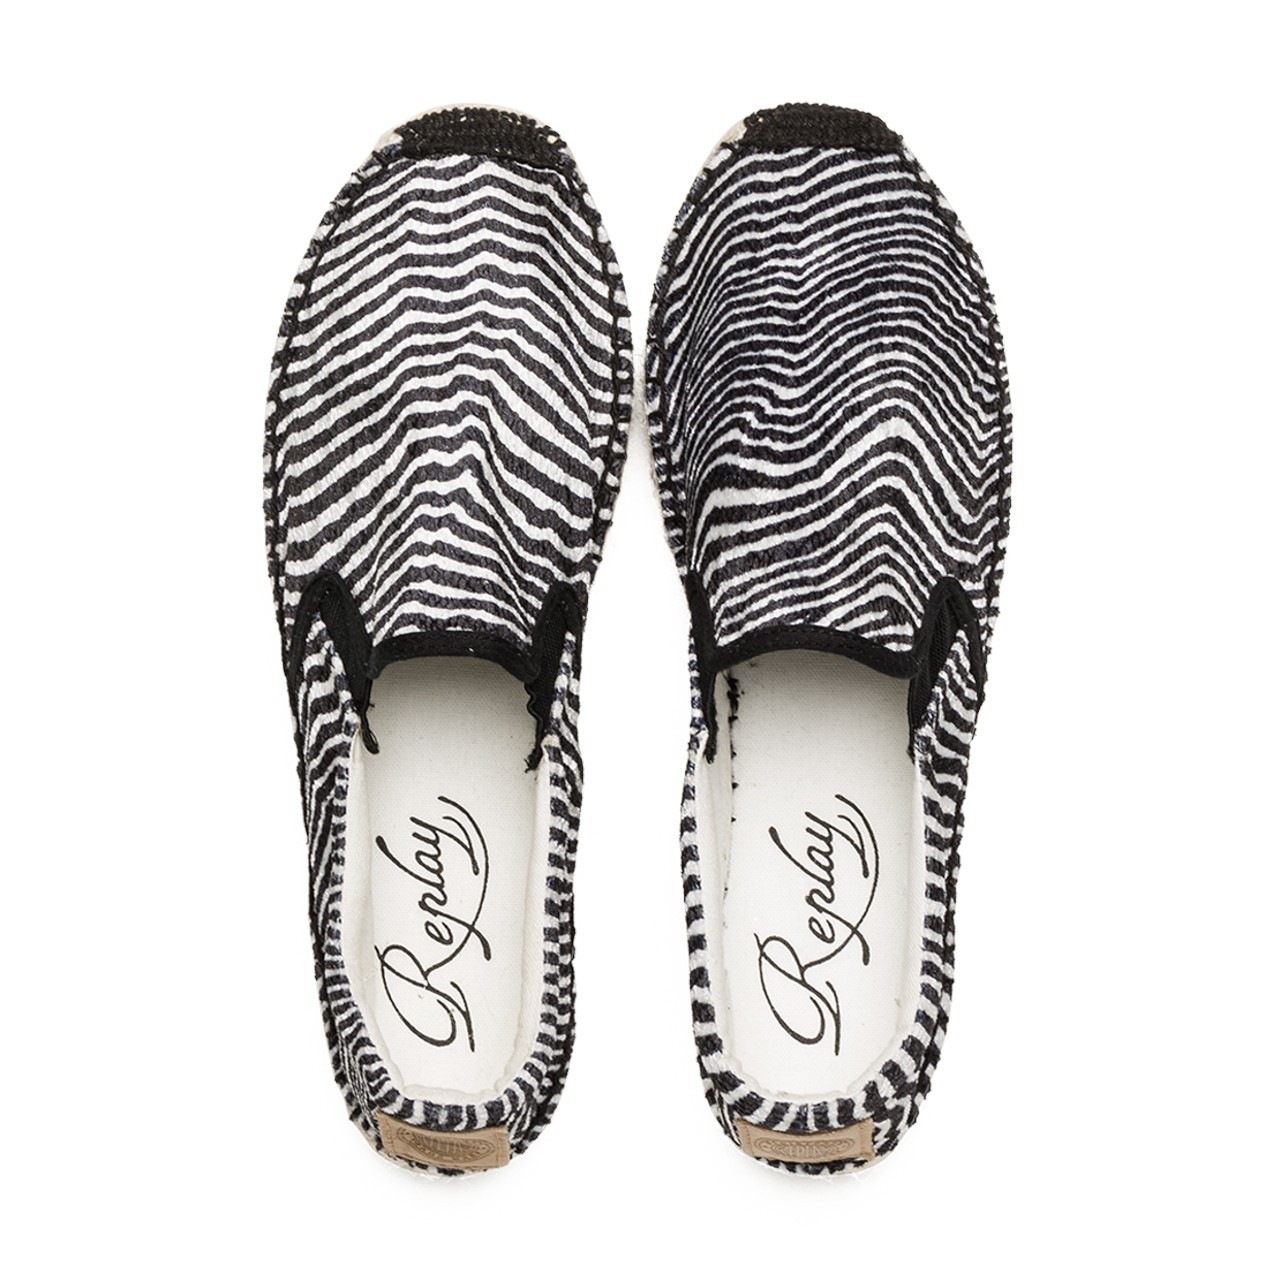 Replay zebracsíkos espadrille cipő 2015.02.27 #79326 fotója